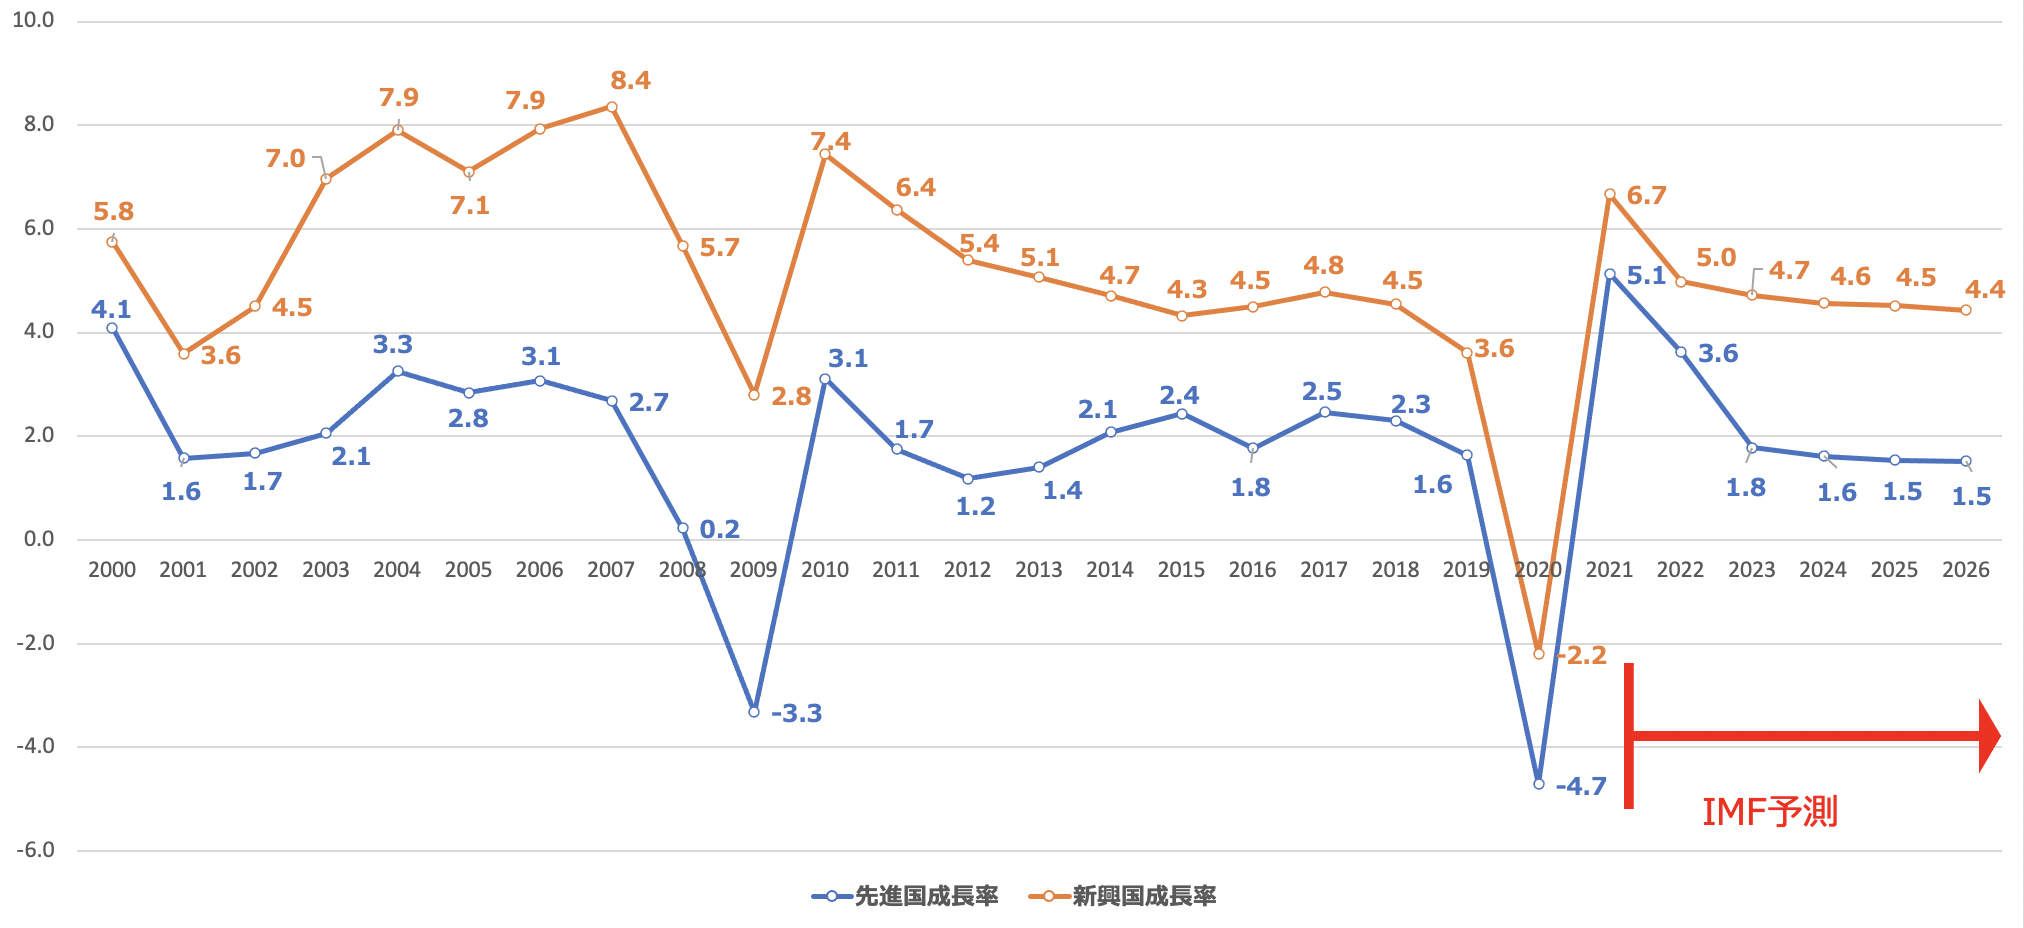 先進国と新興国の経済成長率の比較